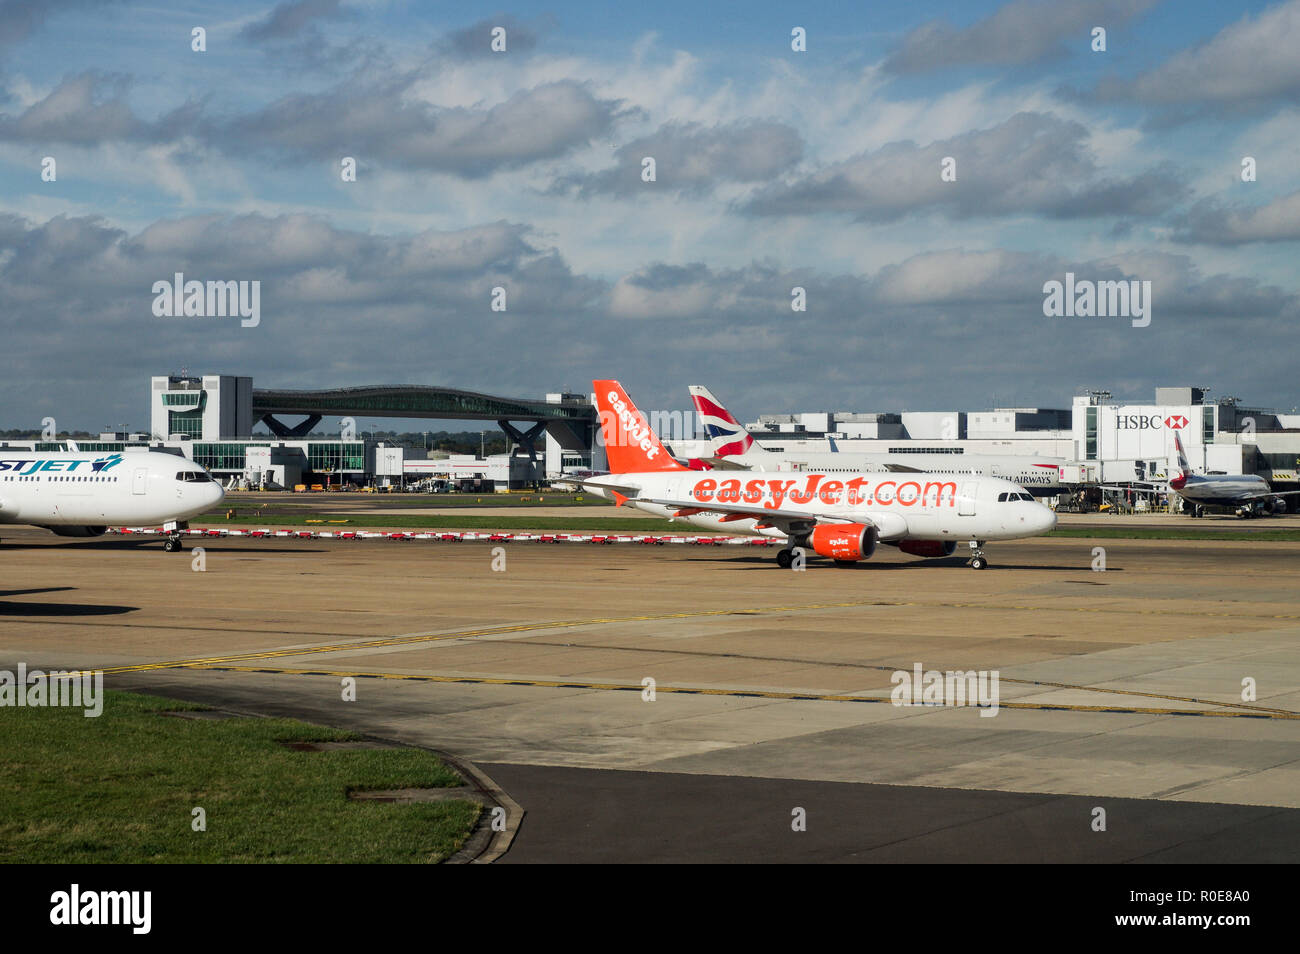 Ocupado El Aeropuerto de Gatwick en el sureste de Inglaterra, en un brillante día soleado Foto de stock